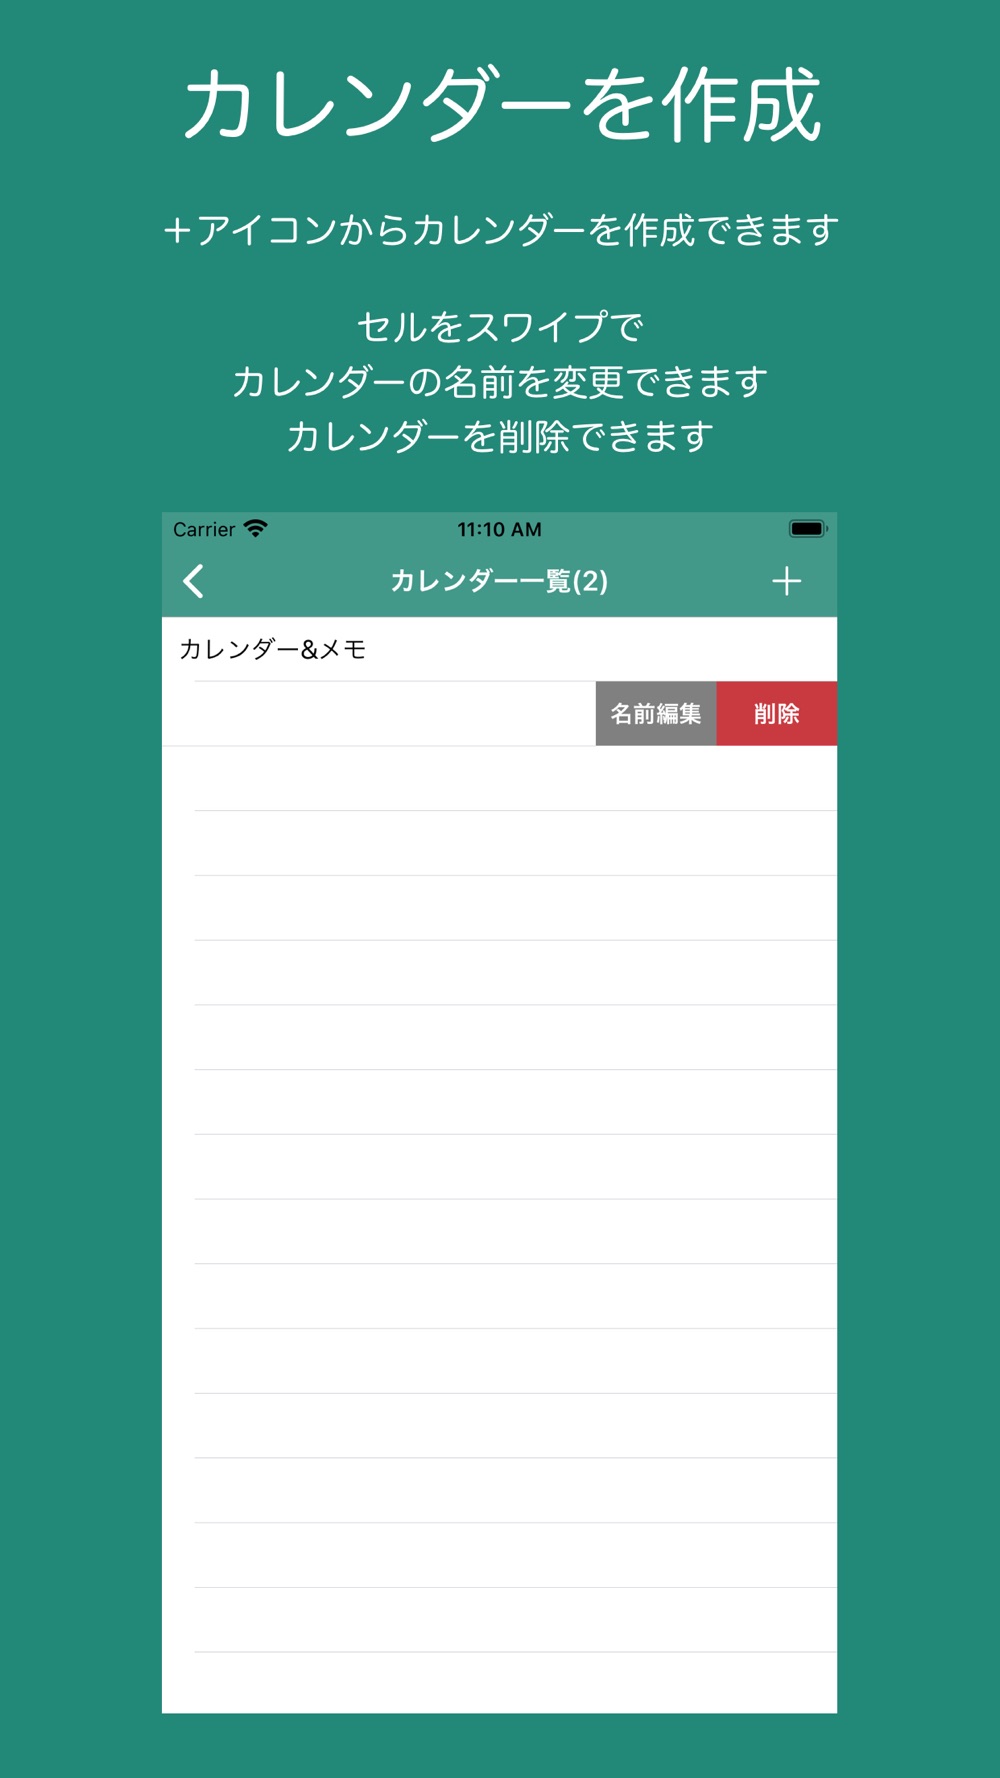 シンプル 縦型カレンダー メモ Free Download App For Iphone Steprimo Com